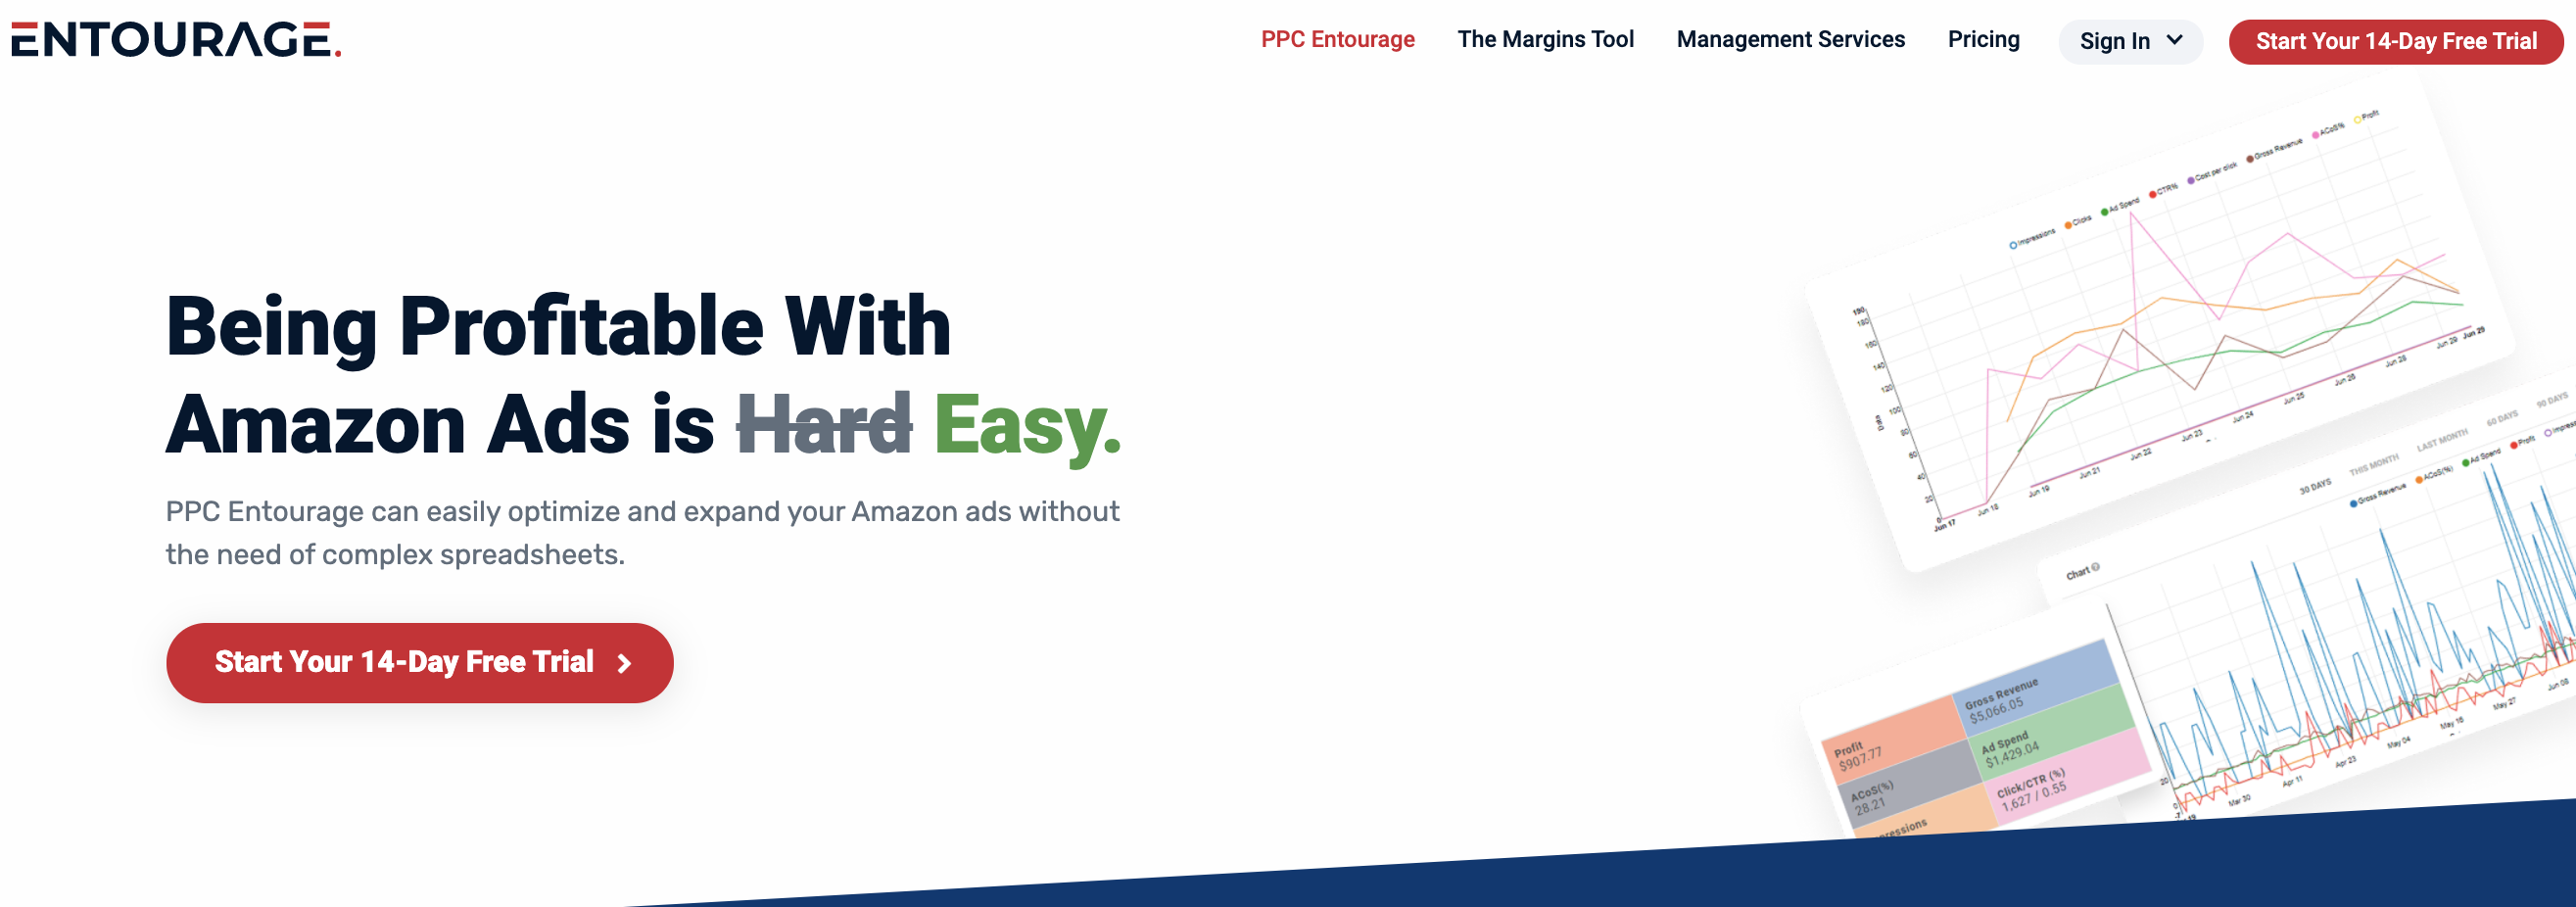 PPC Entourage, one of the best Amazon PPC tools